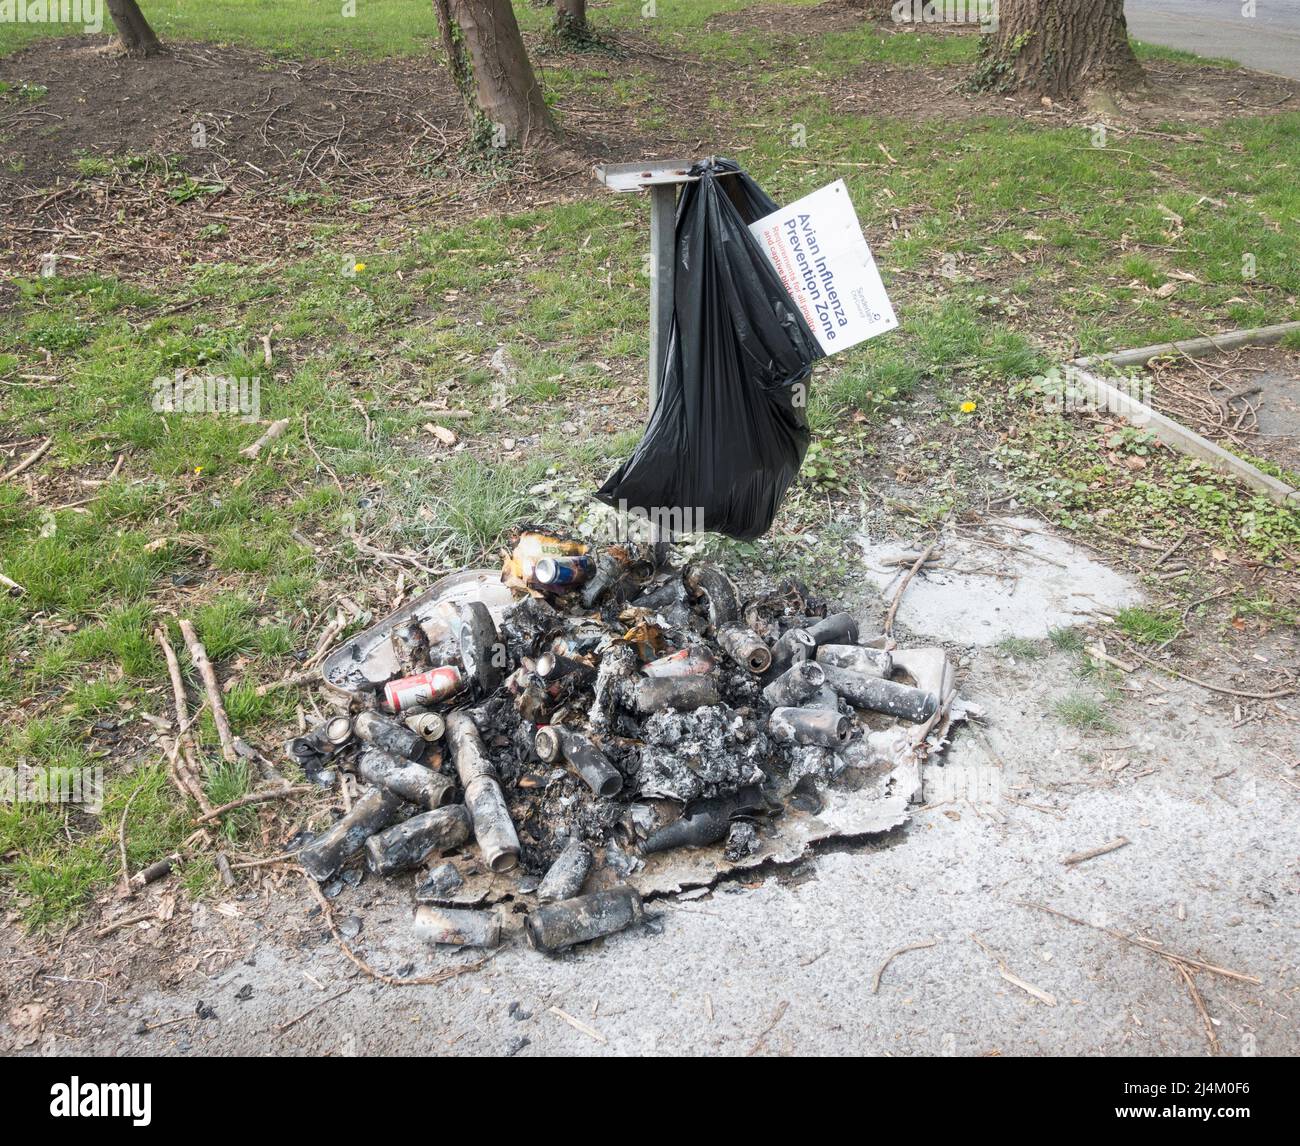 Ein Abfalleimer, der von Vandalen verbrannt wurde und verkohlte Überreste des Inhalts auf dem Boden zurückließ, Washington, Nordostengland, Großbritannien Stockfoto